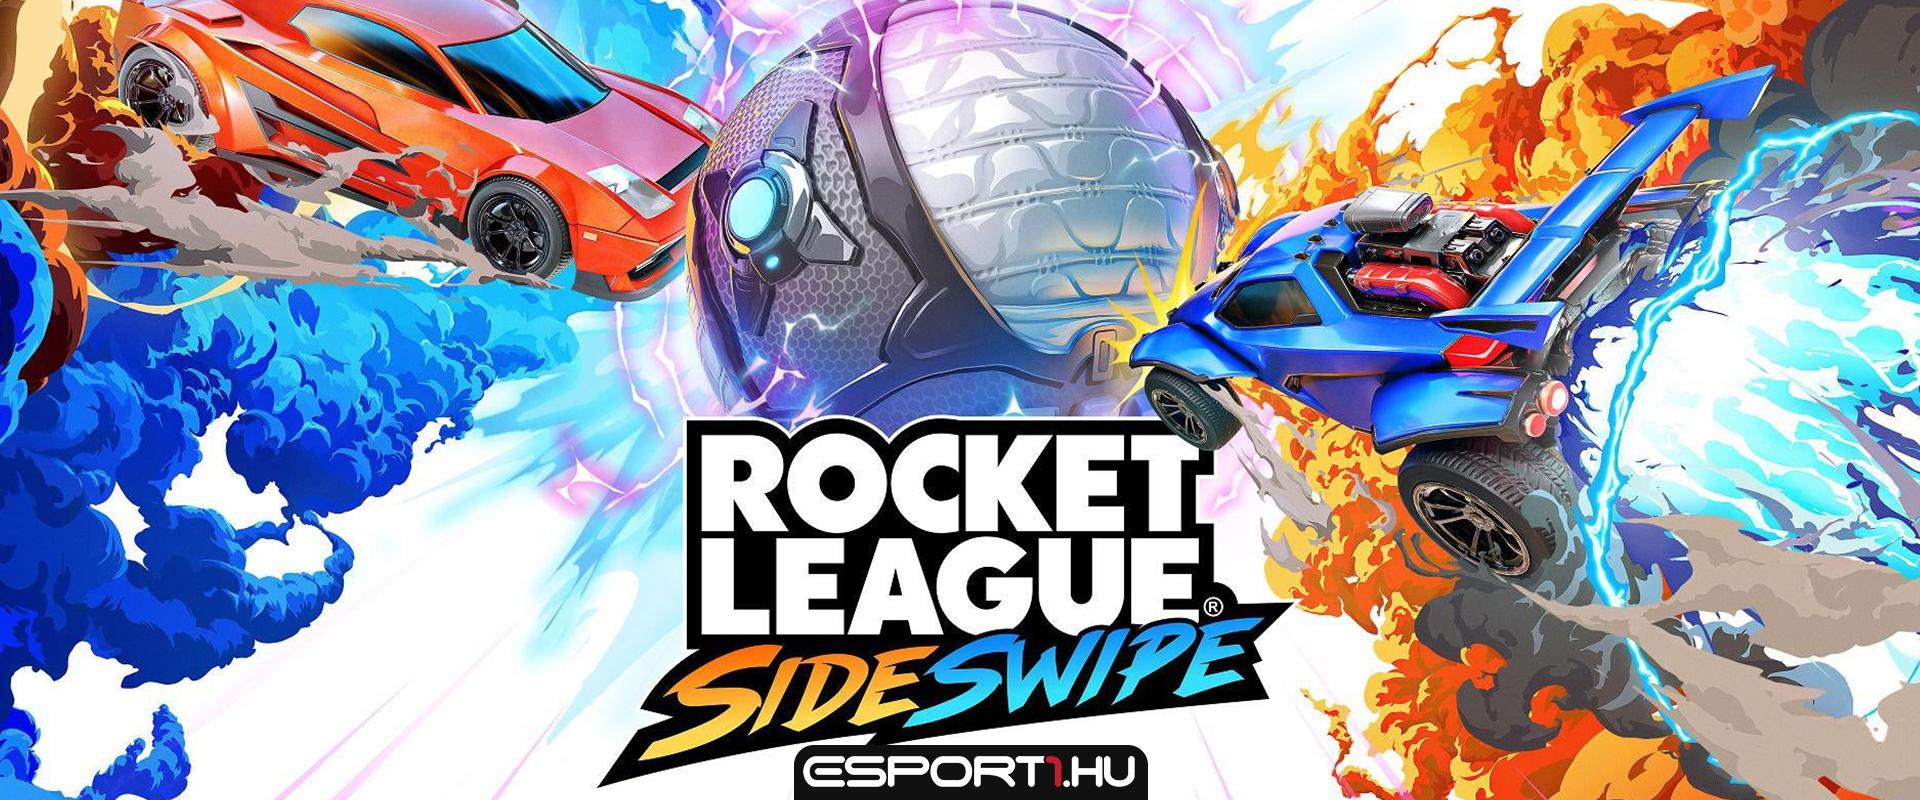 Megkezdődött a Rocket League Sideswipe 1. kompetitív szezonja